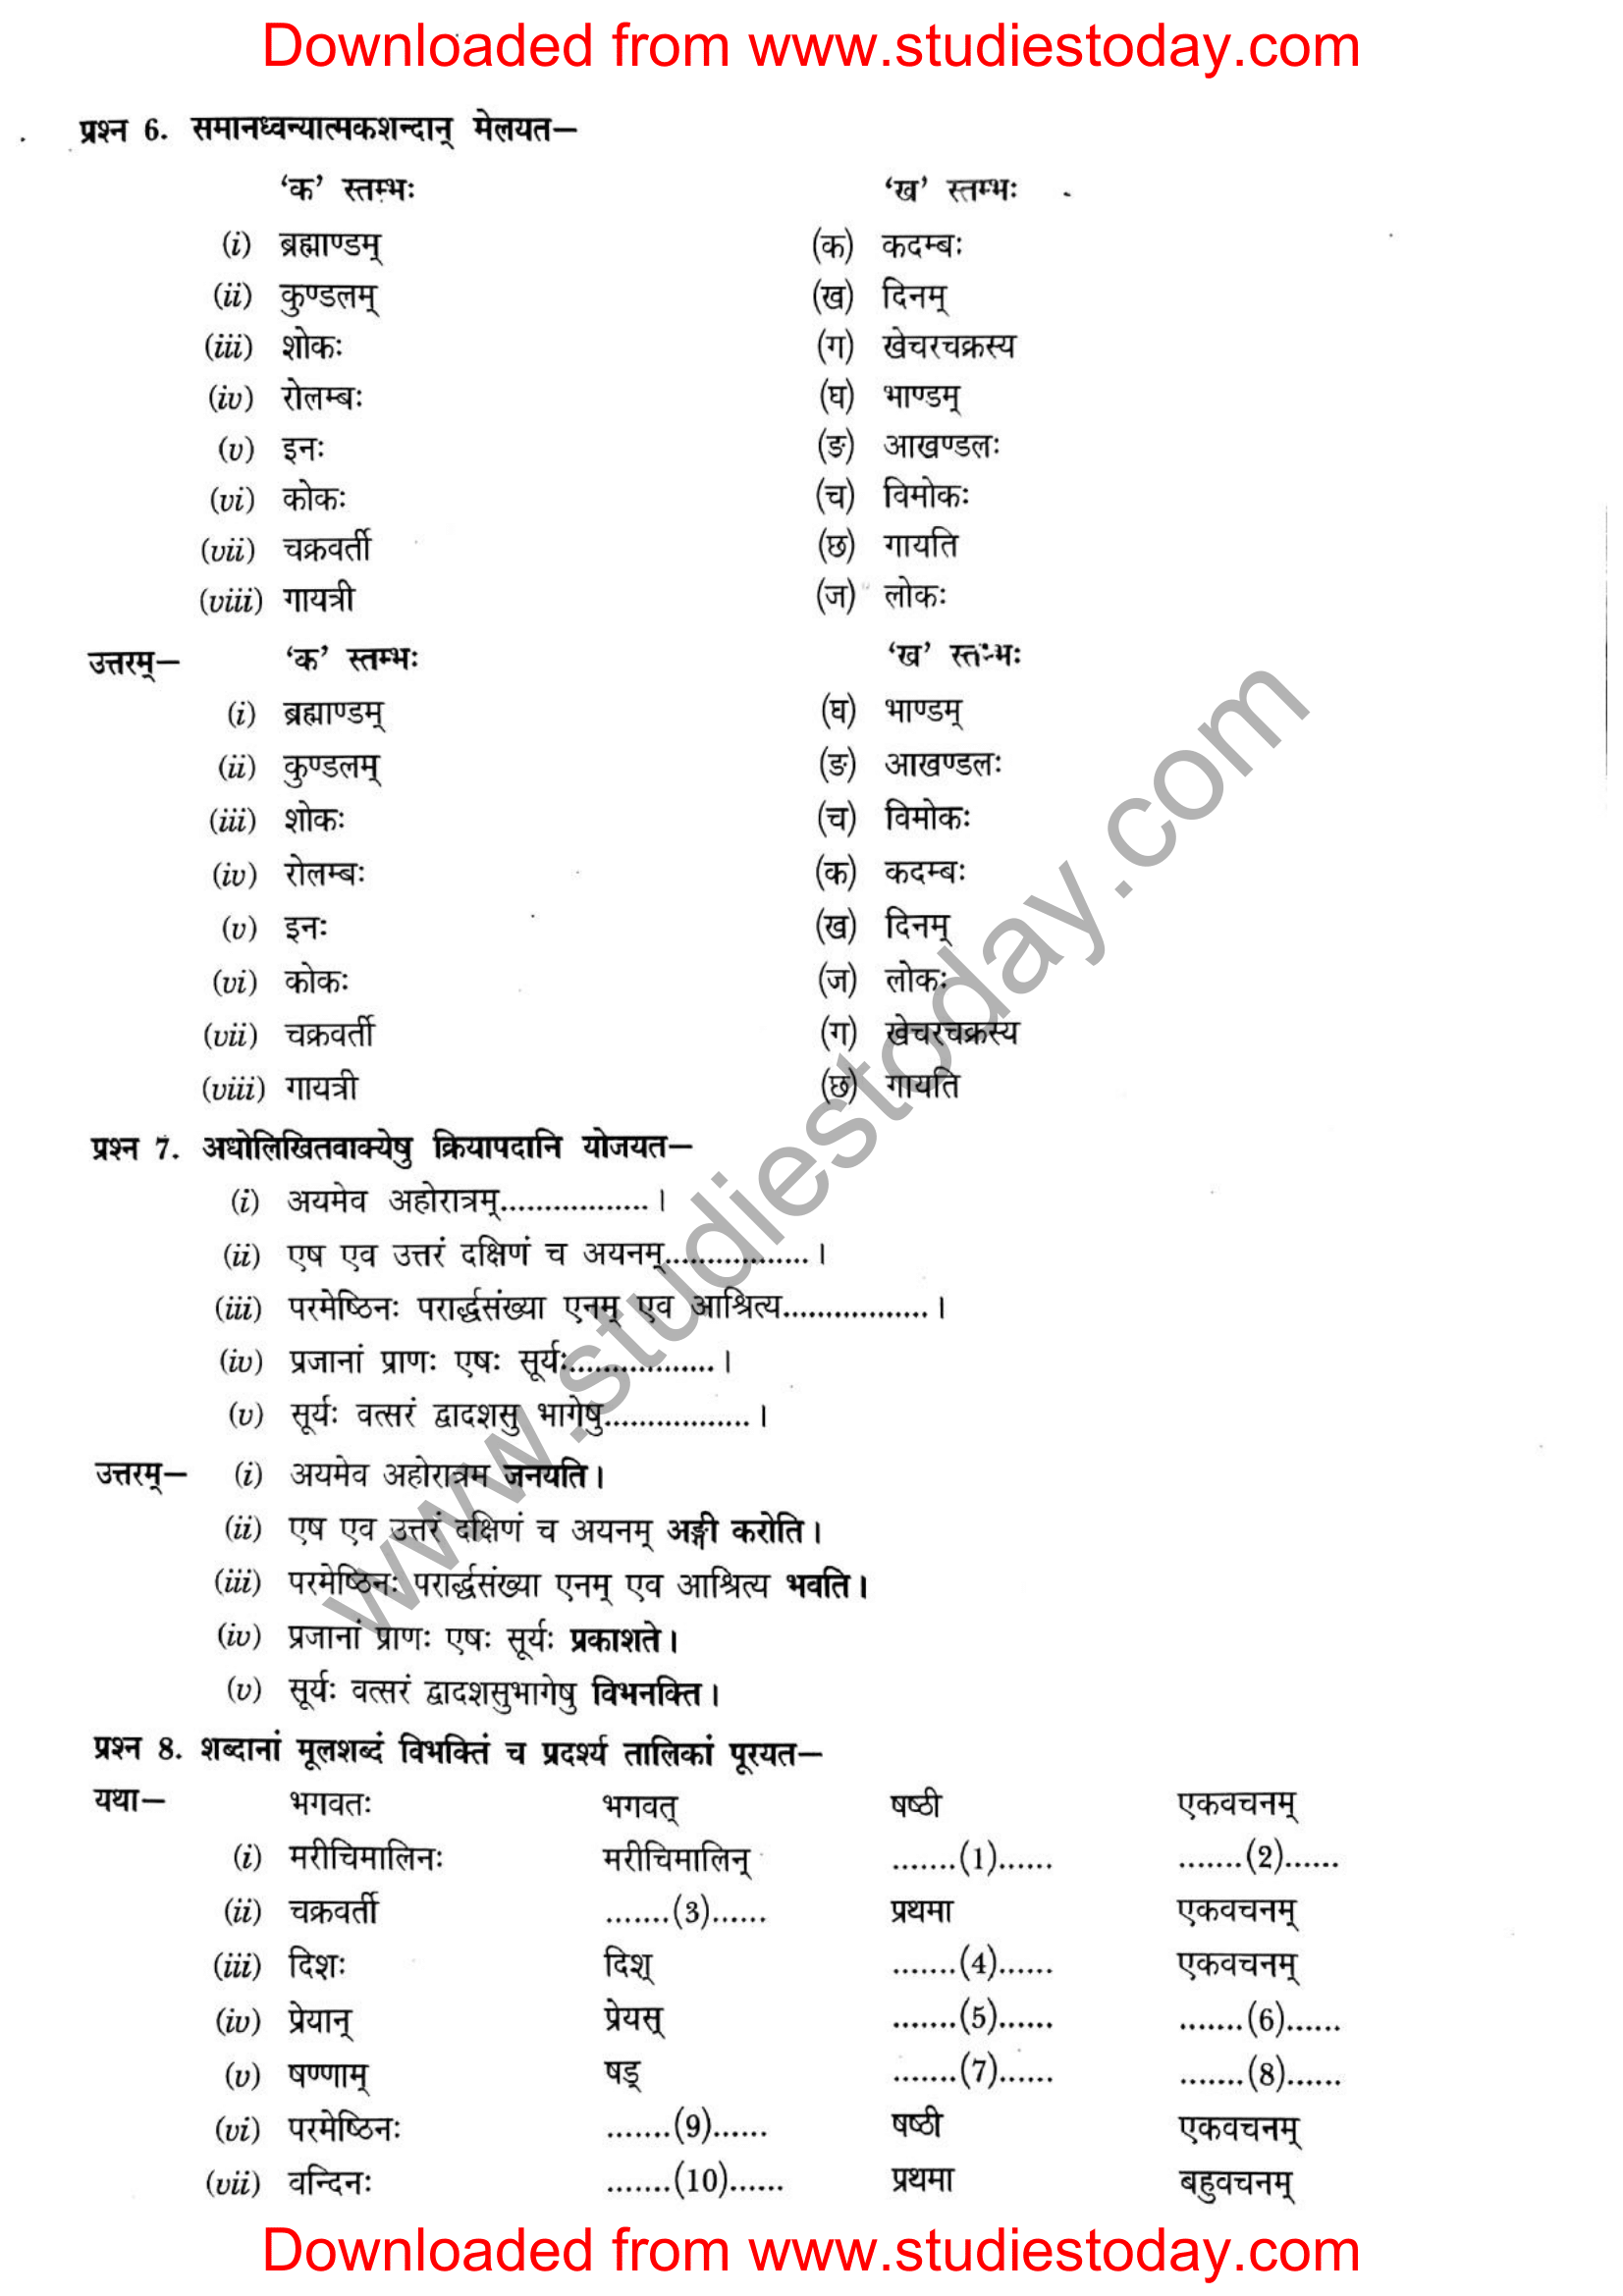 ncert-solutions-class-12-sanskrit-ritikia-chapter-2-06